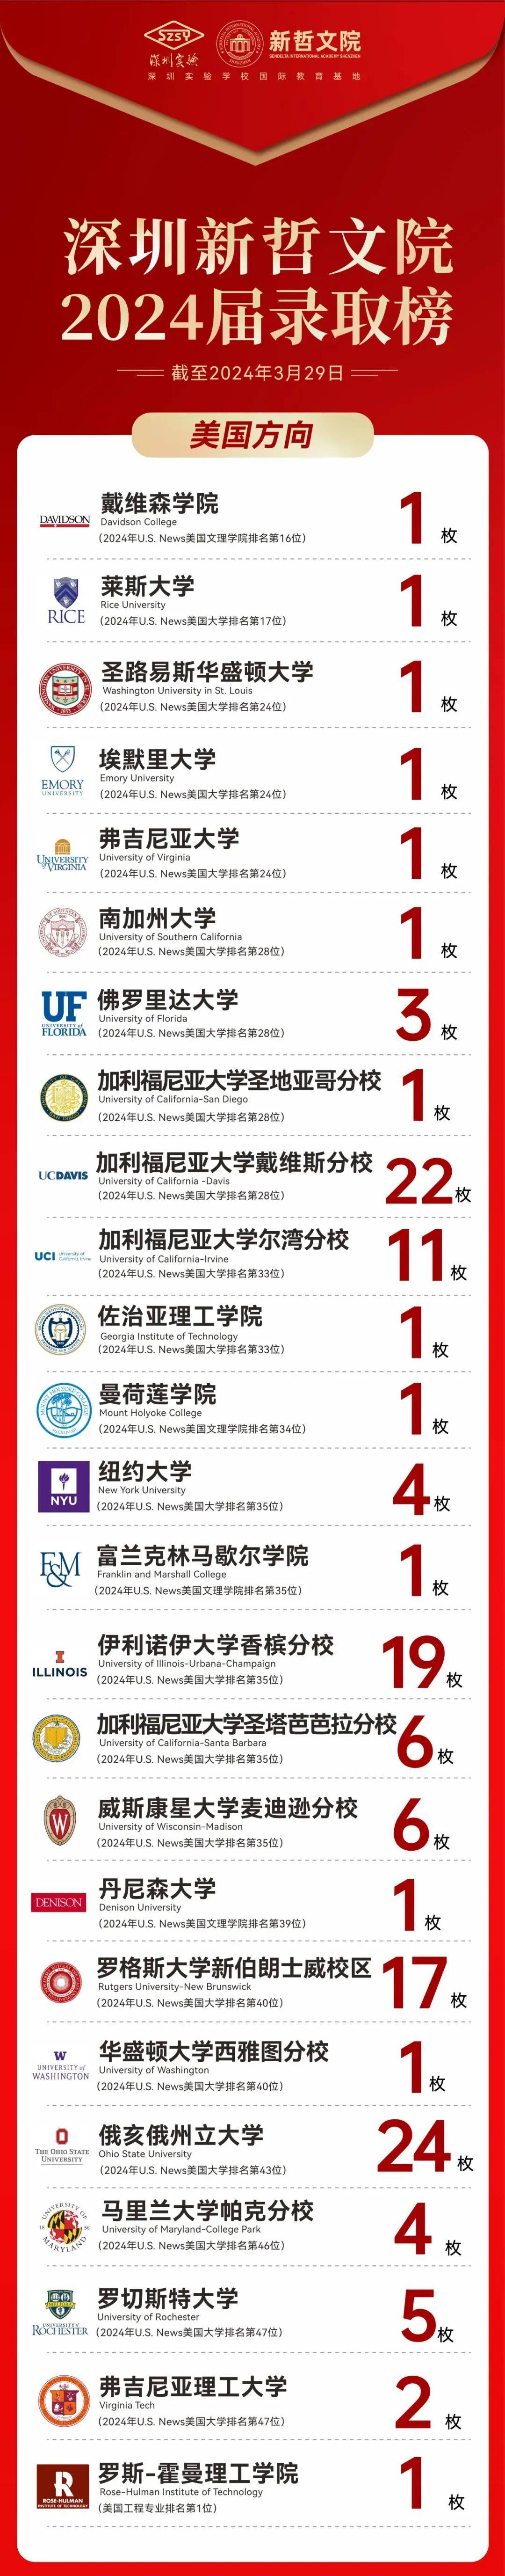 深圳国际学校升学top10汇总 深中只排第三,第一第二实力太强!